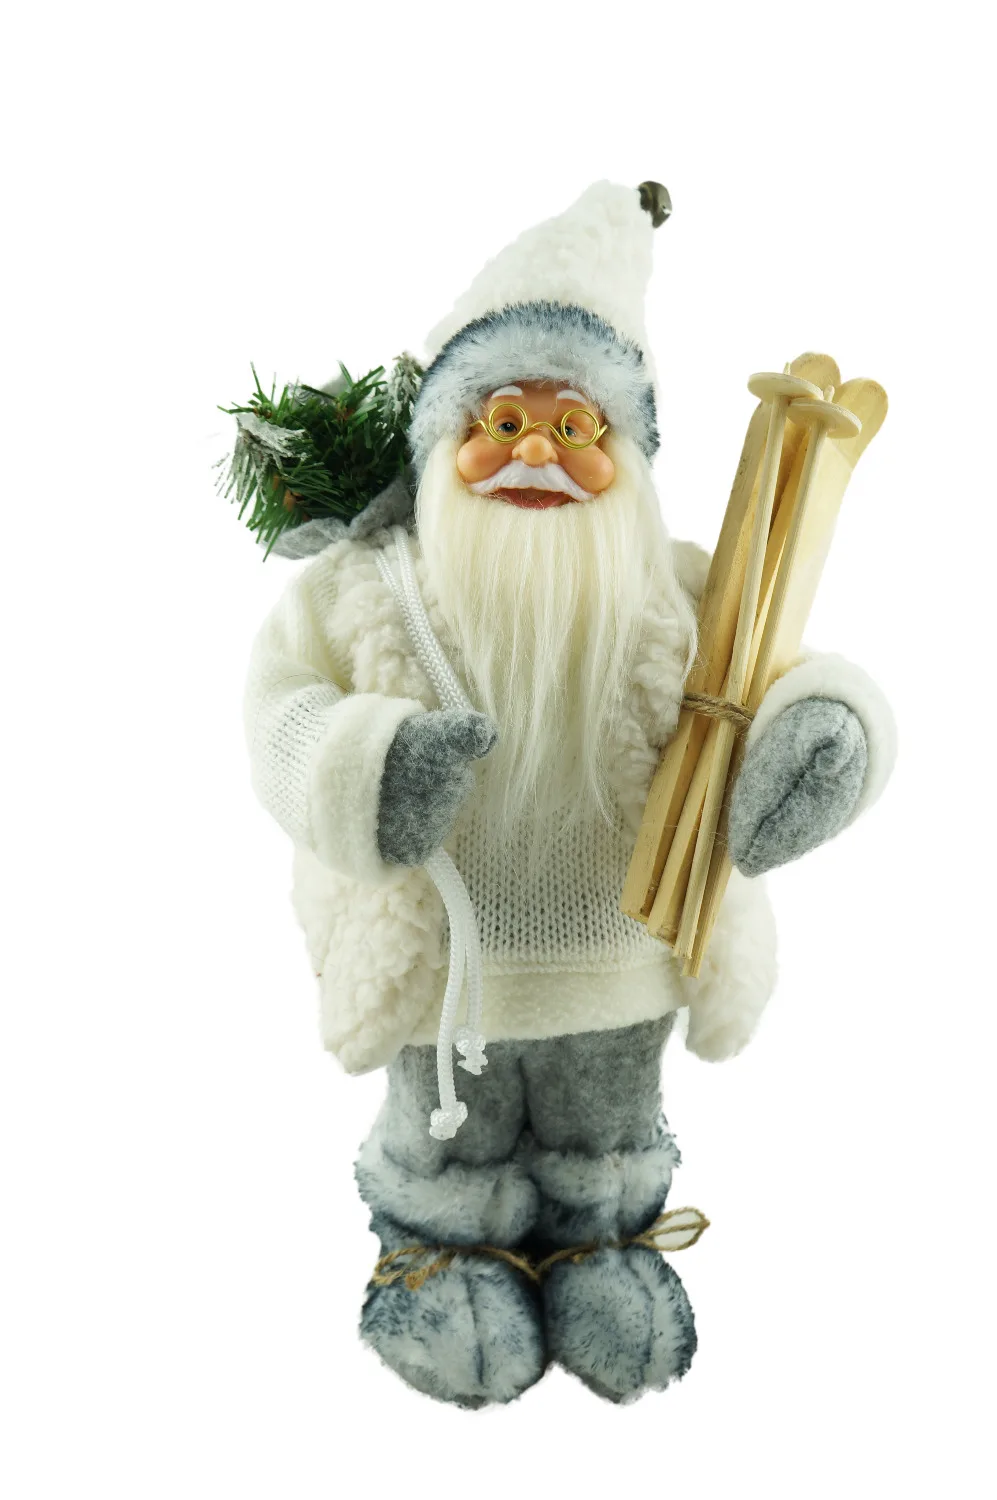  인형 산타 클로스 크리스마스 장식 장난감 집 컬렉션 12 "(30CM 높이) Cosetter